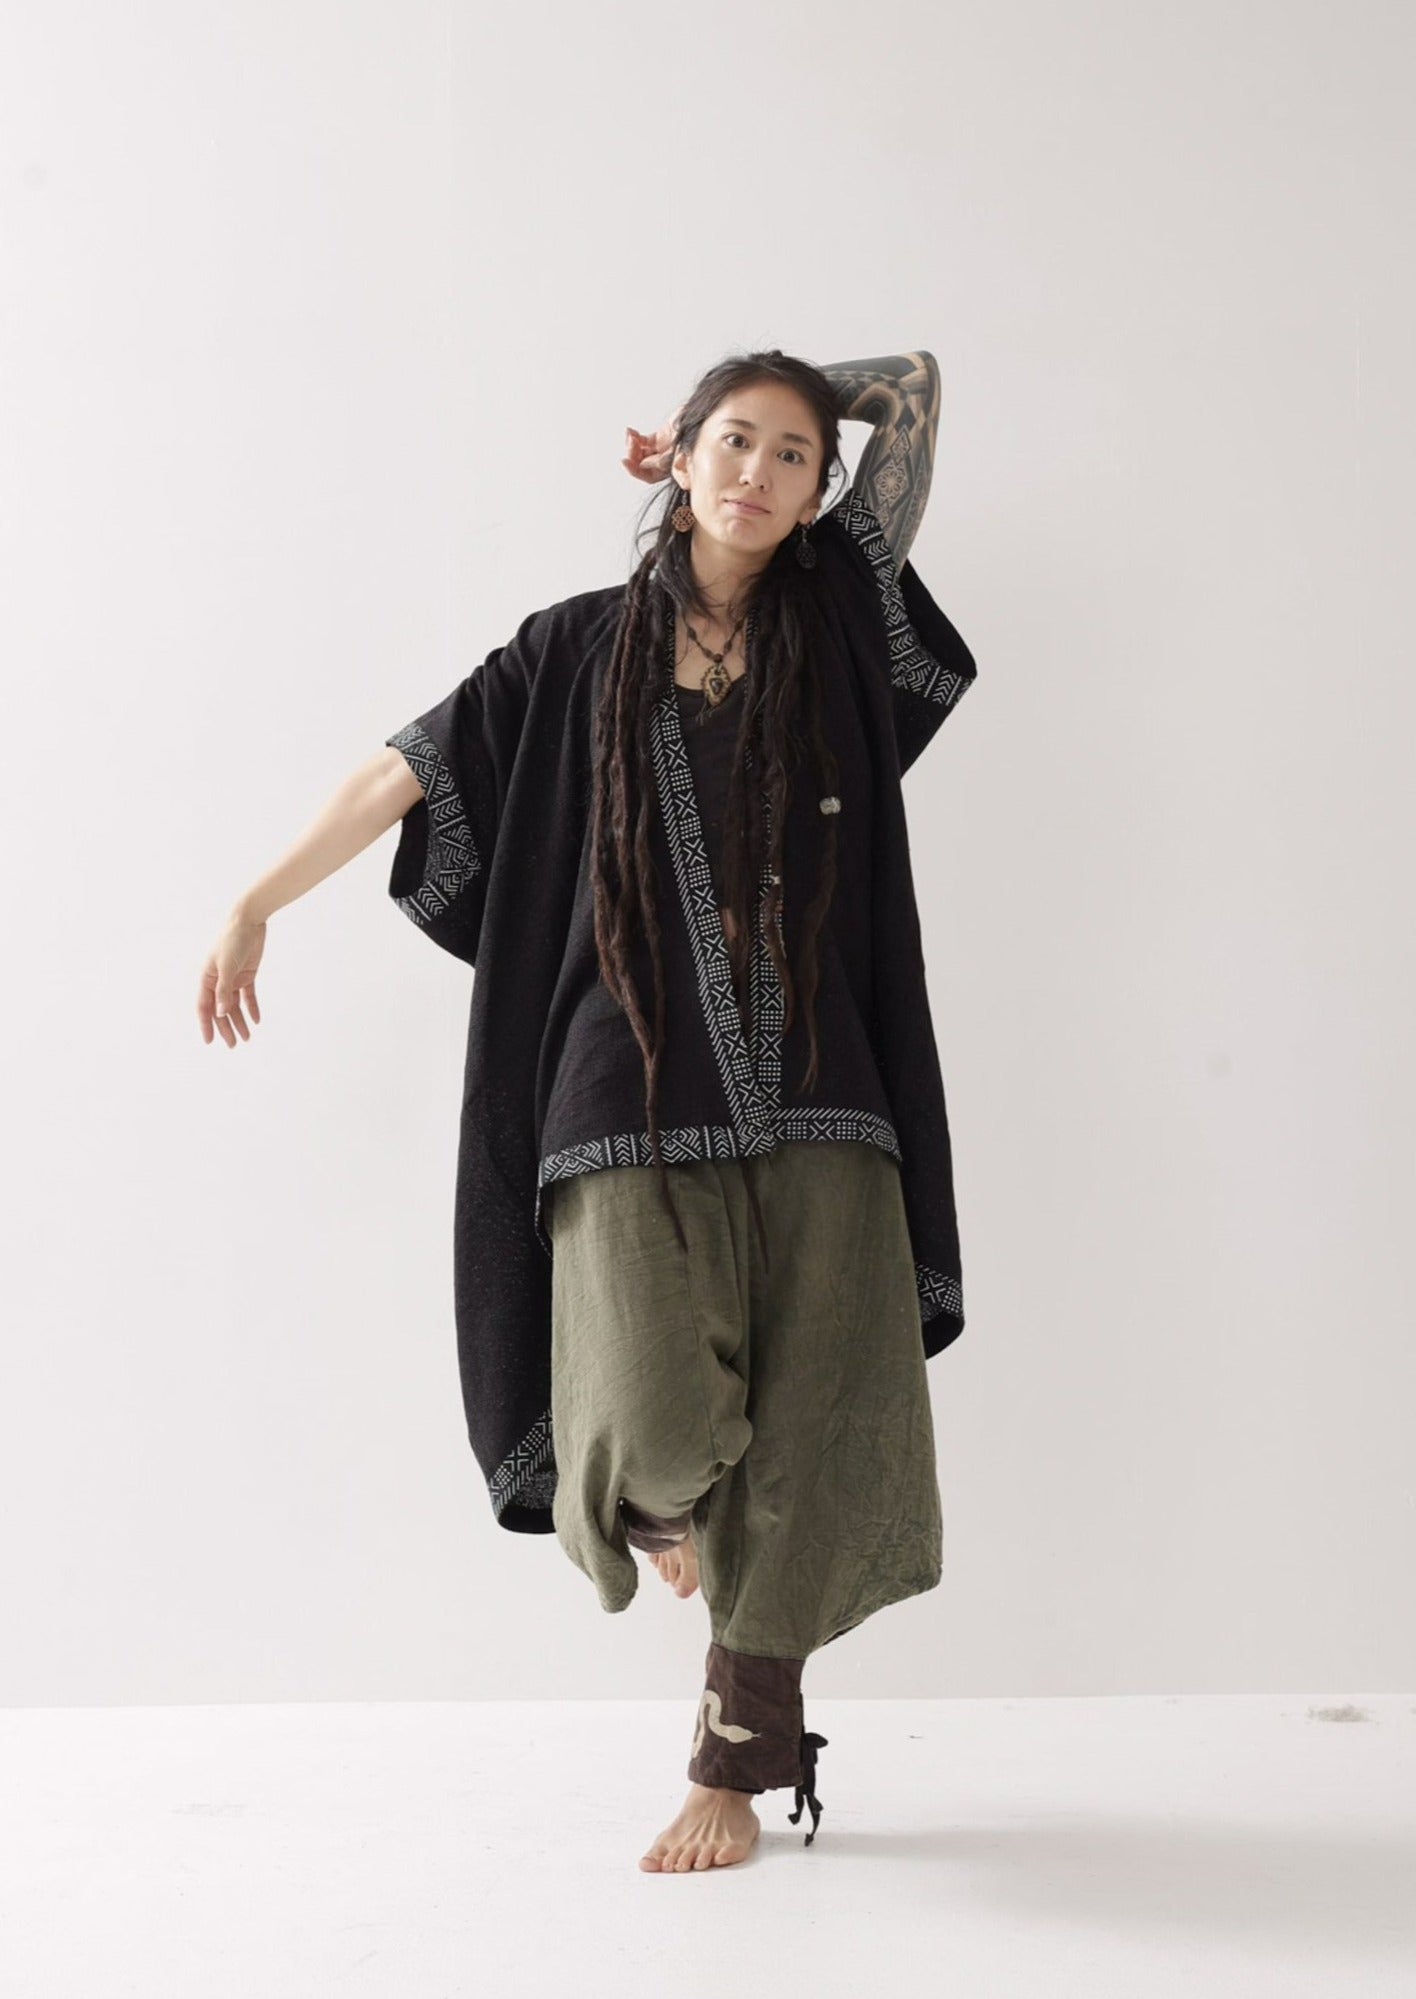 [Doragon Tail / ユニセックス] HINO kimono フィッシュテール コットン羽織